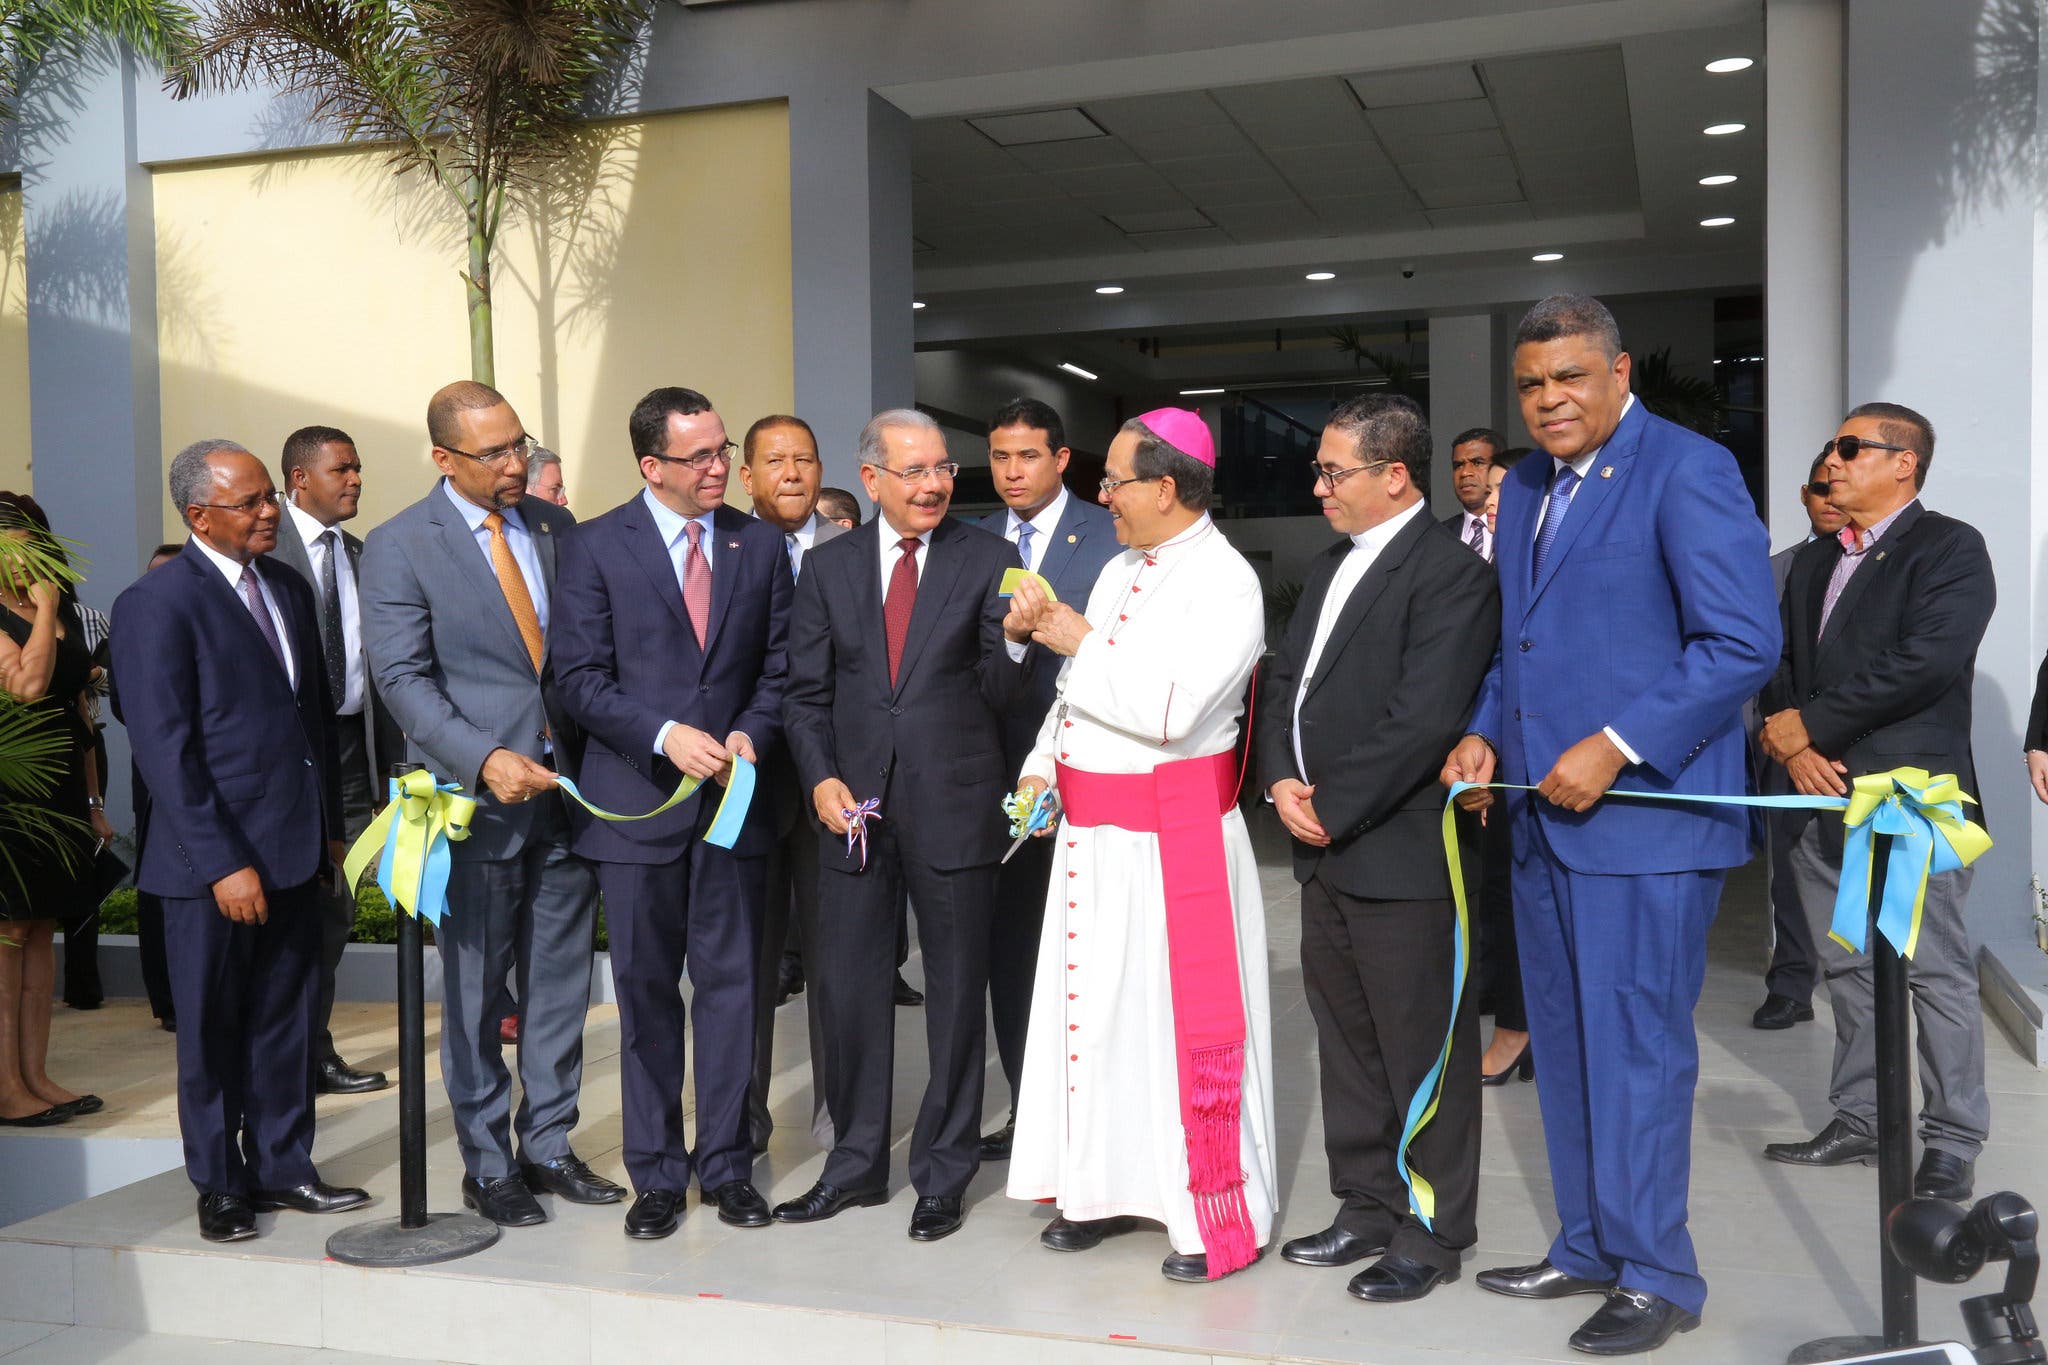 Presidente Danilo Medina asiste a inauguración edificio Universidad Católica del Este en Higüey